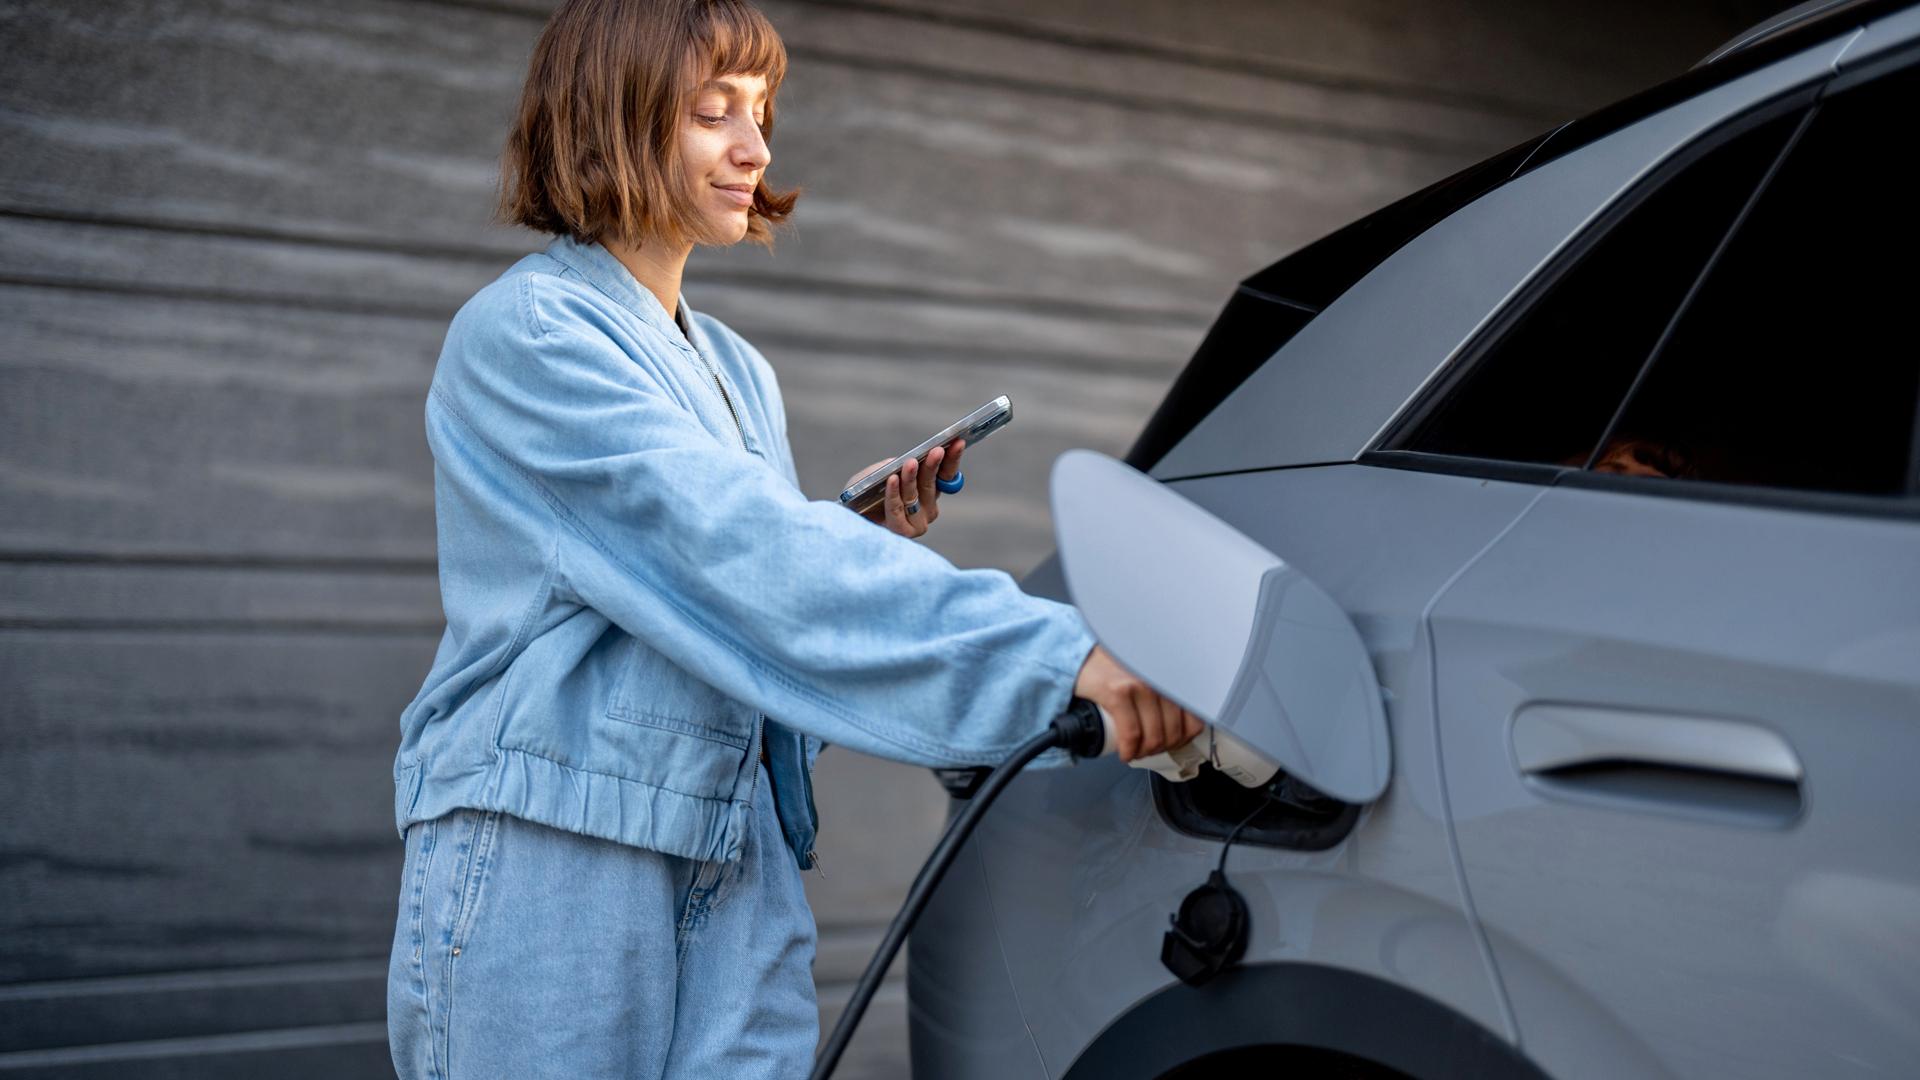 En ung kvinna med kortklippt hår laddar sin elbil samtidigt som hon kollar på sin mobiltelefon.